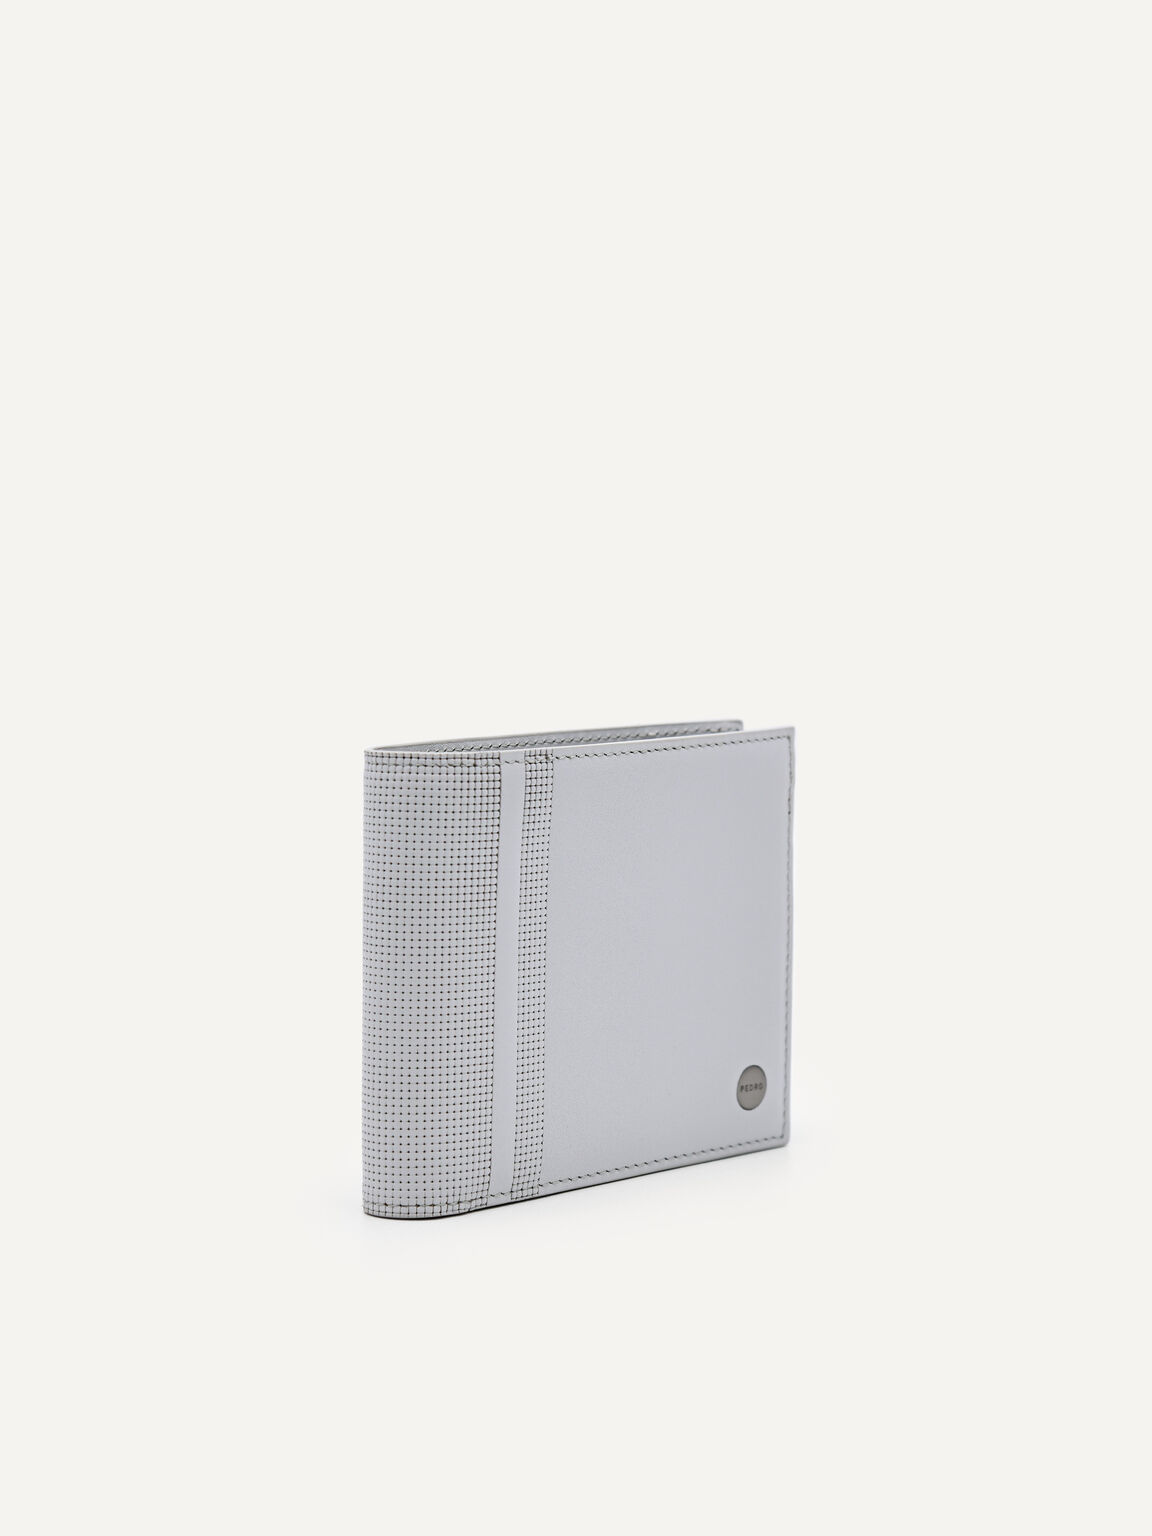 Oliver Leather Bi-Fold Wallet with Insert, Light Grey, hi-res